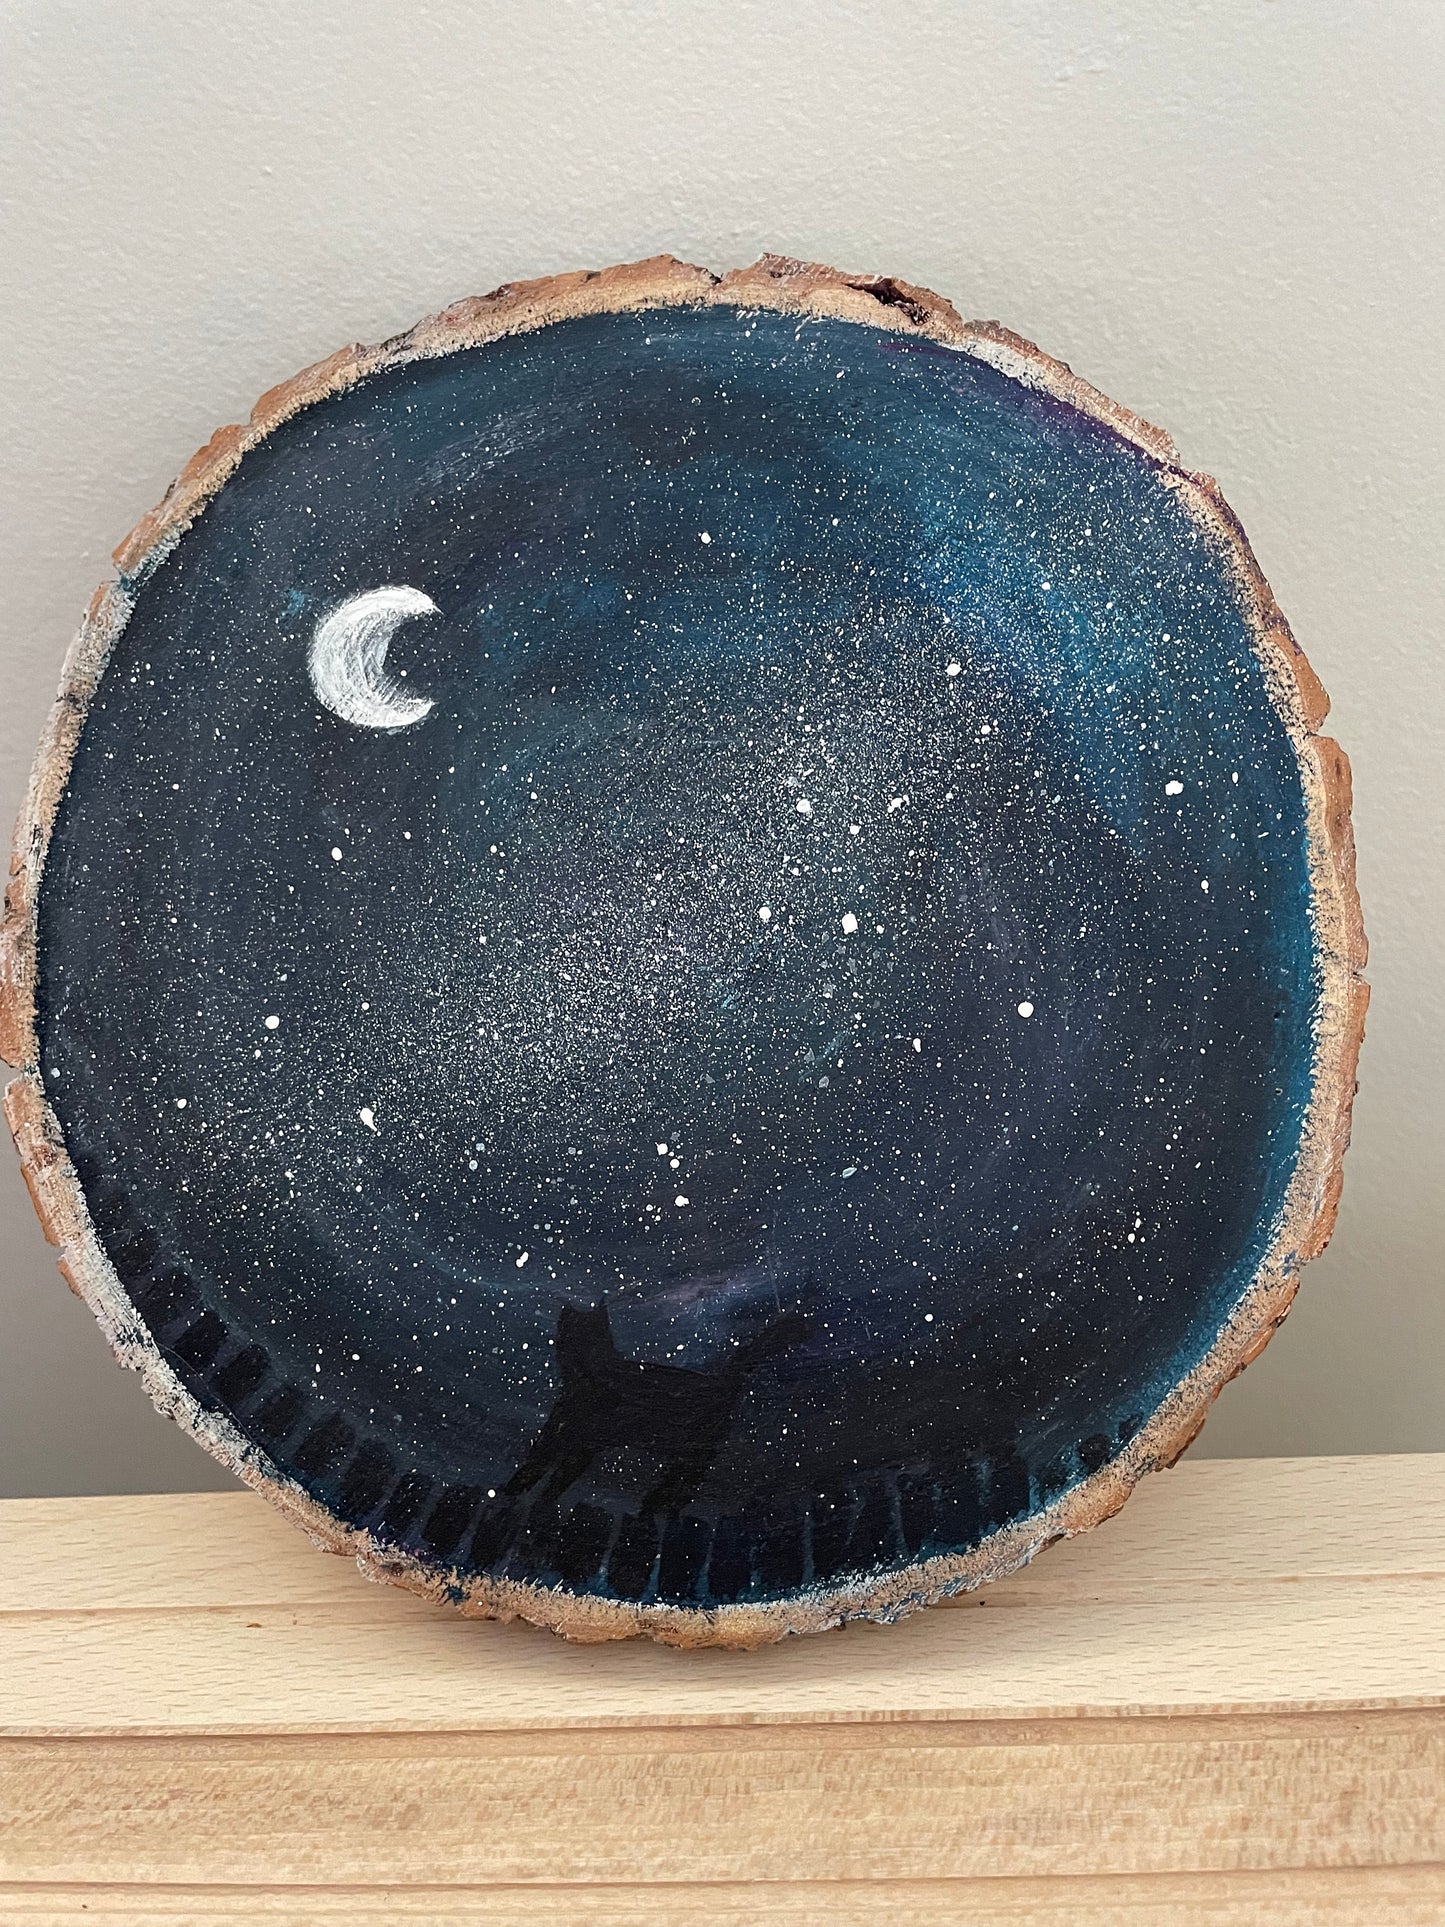 Chat et galaxie : Peinture sur bois